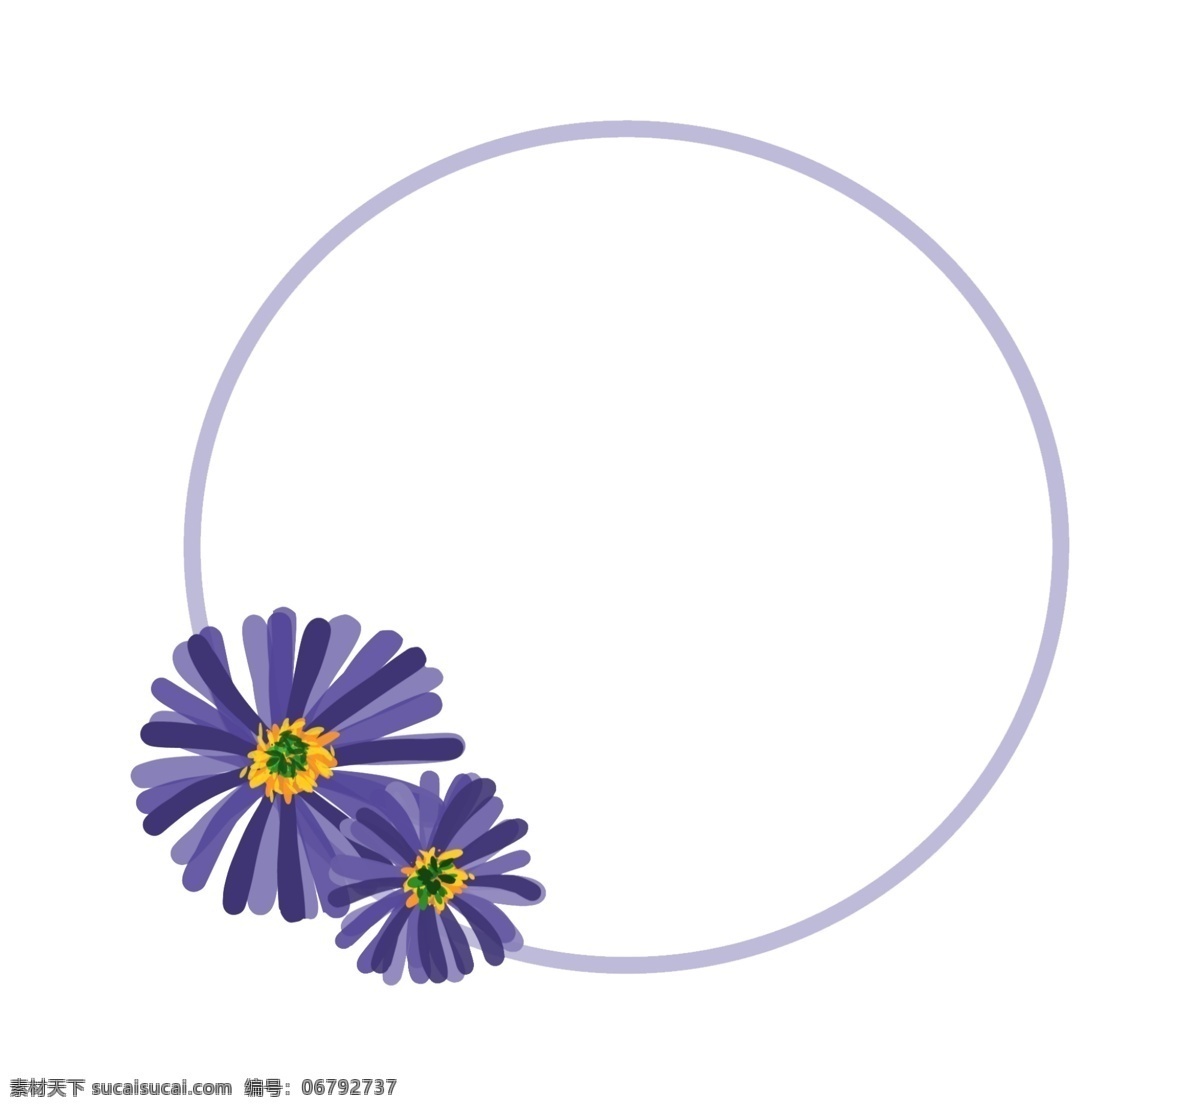 手绘 紫色 小雏 菊 边框 雏菊 花卉 花朵 小清新